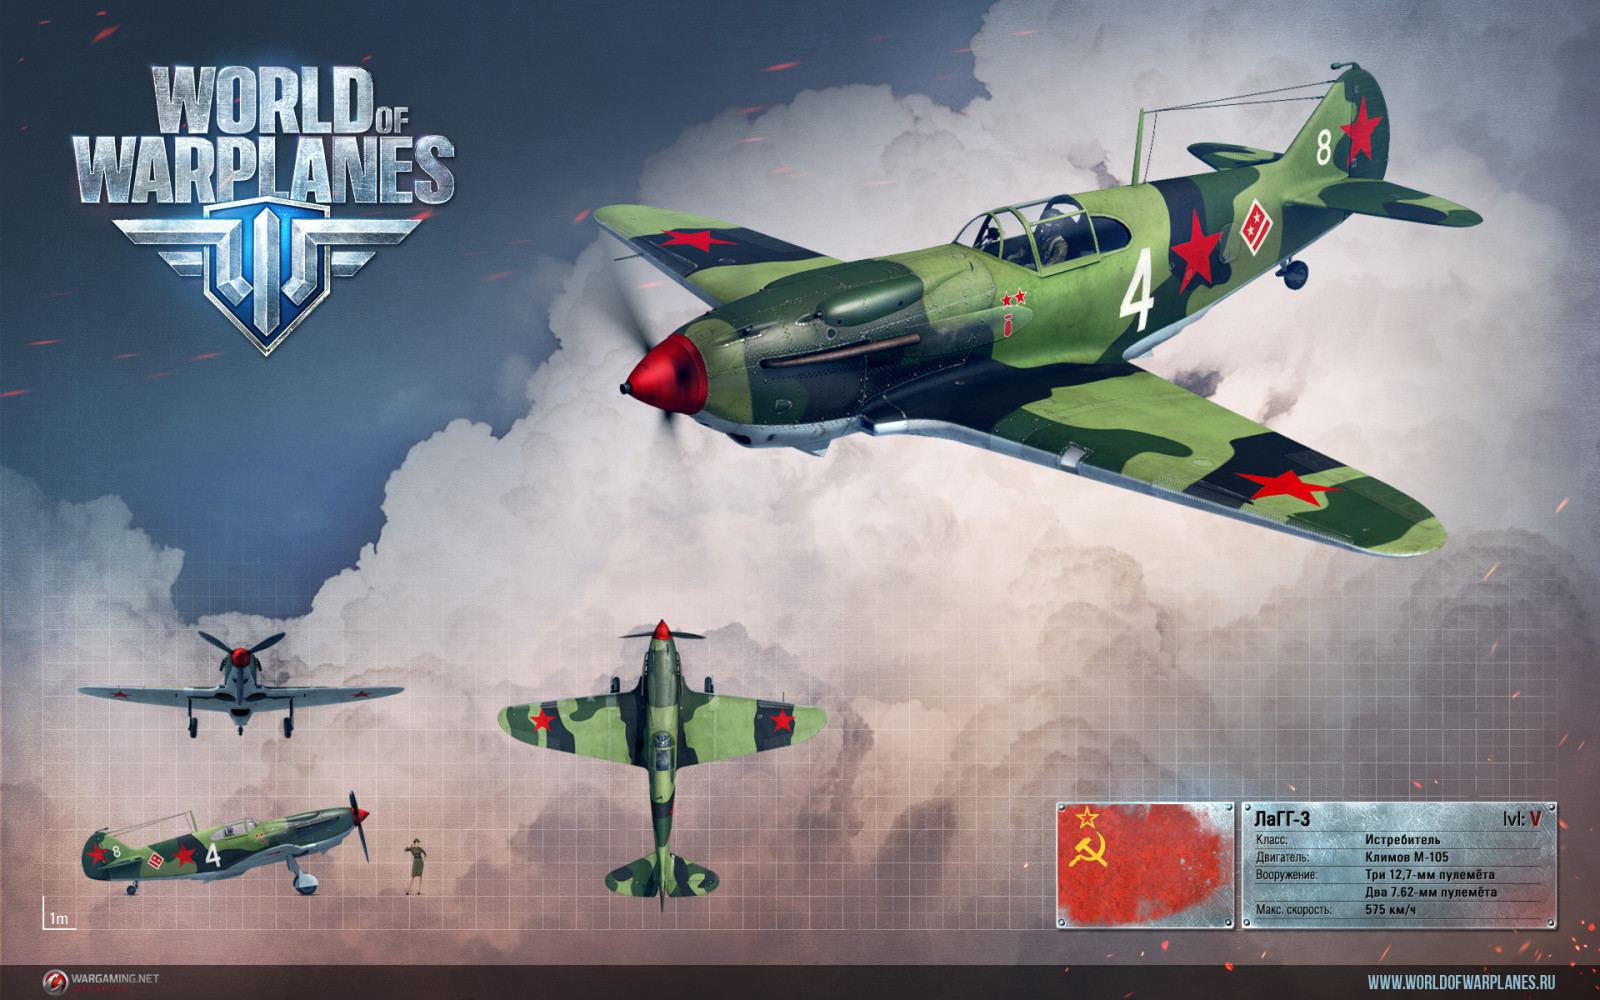 ソビエト連邦, 飛行機, 戦士, レンダー, うわ, Wargaming.net, LaGG-3